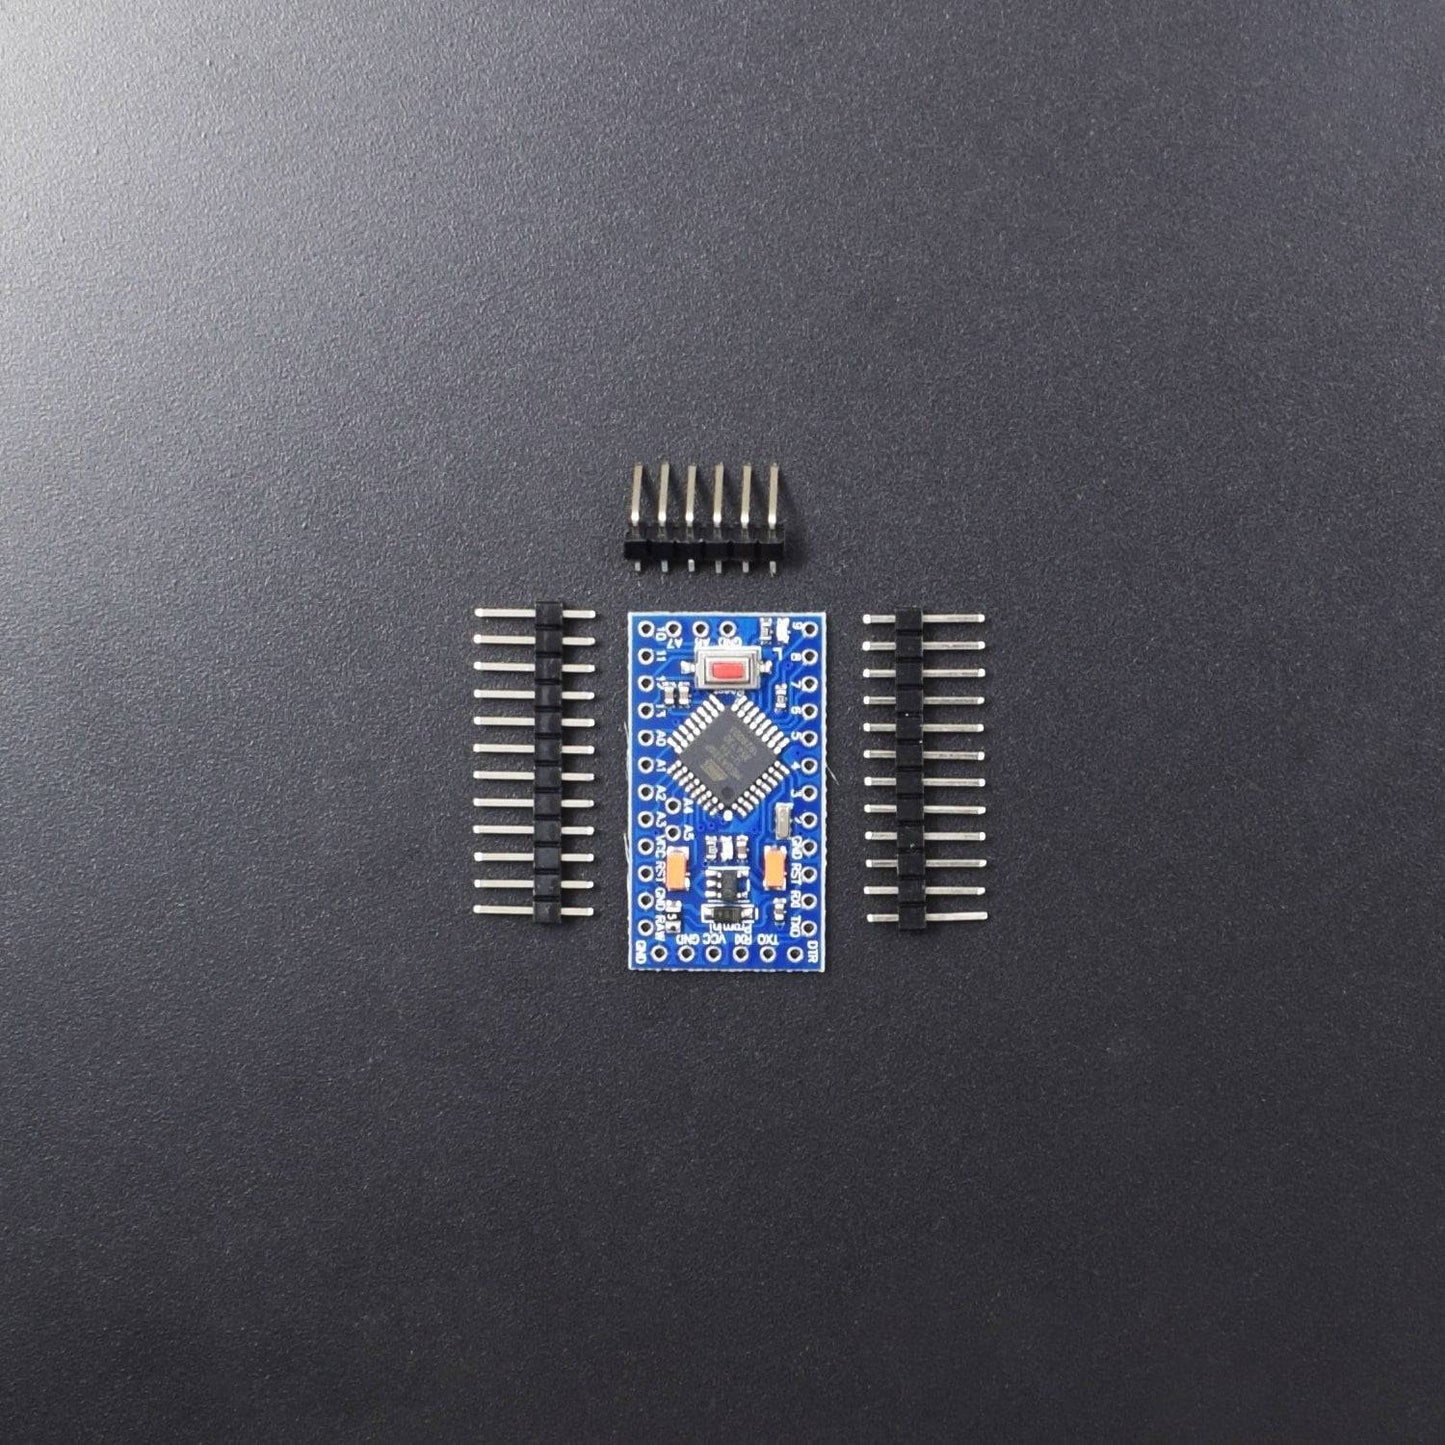 PRO Mini Atmega328 Development Board 5V/16MHz compatible with arduino IDE - AR032 - REES52